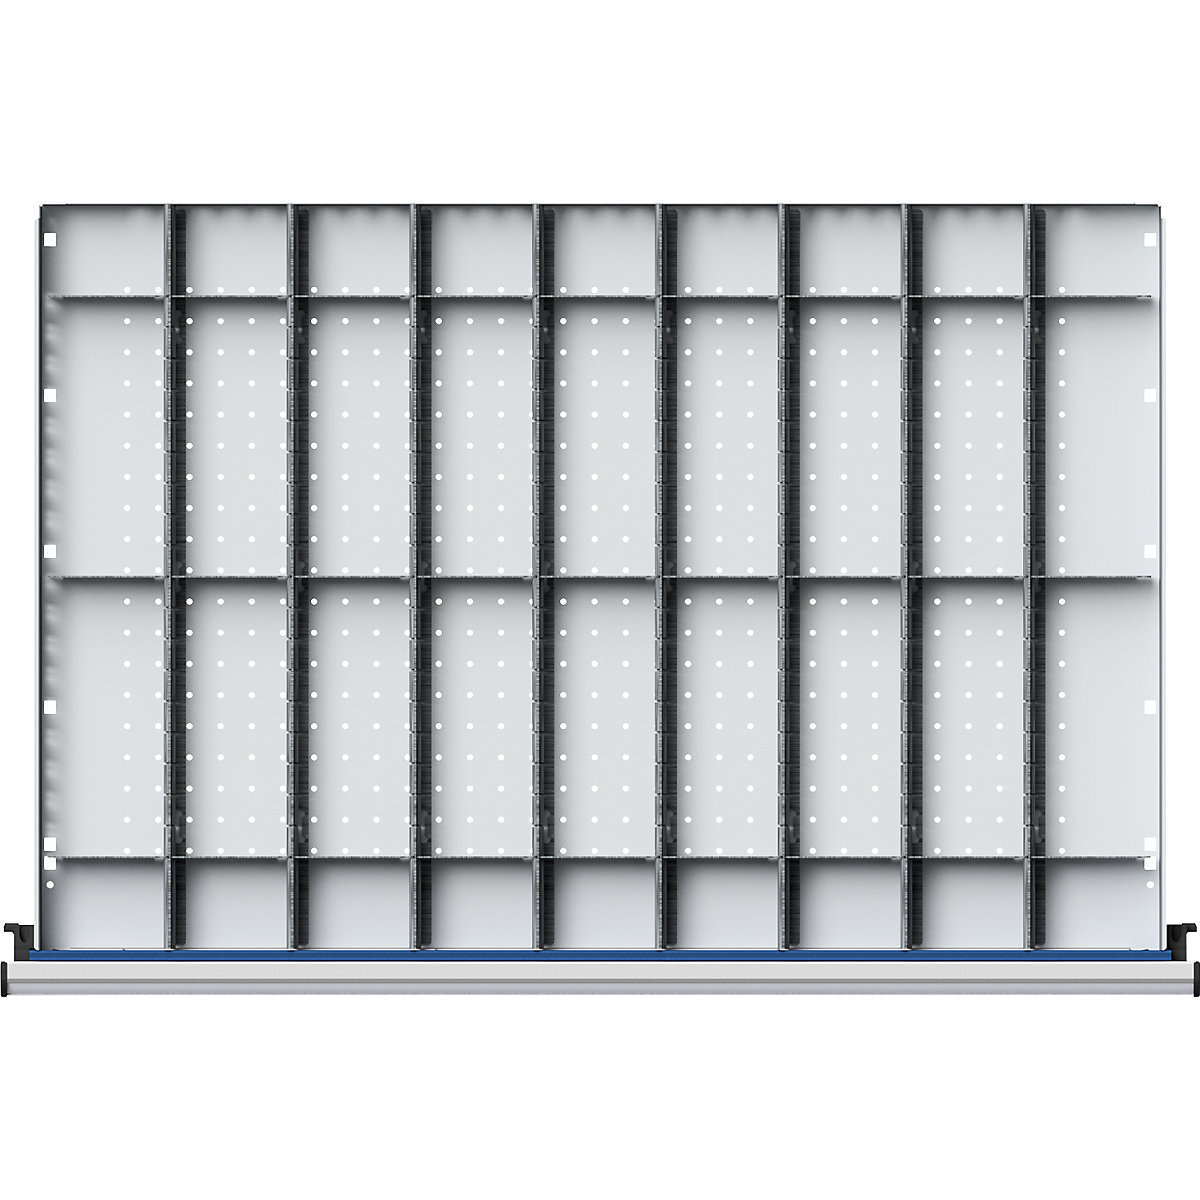 Elválasztókészlet szé x mé 900 x 600 mm-es fiókokhoz – ANKE, 1/9-osztás, 90 – 150 mm-es előlapmagassághoz